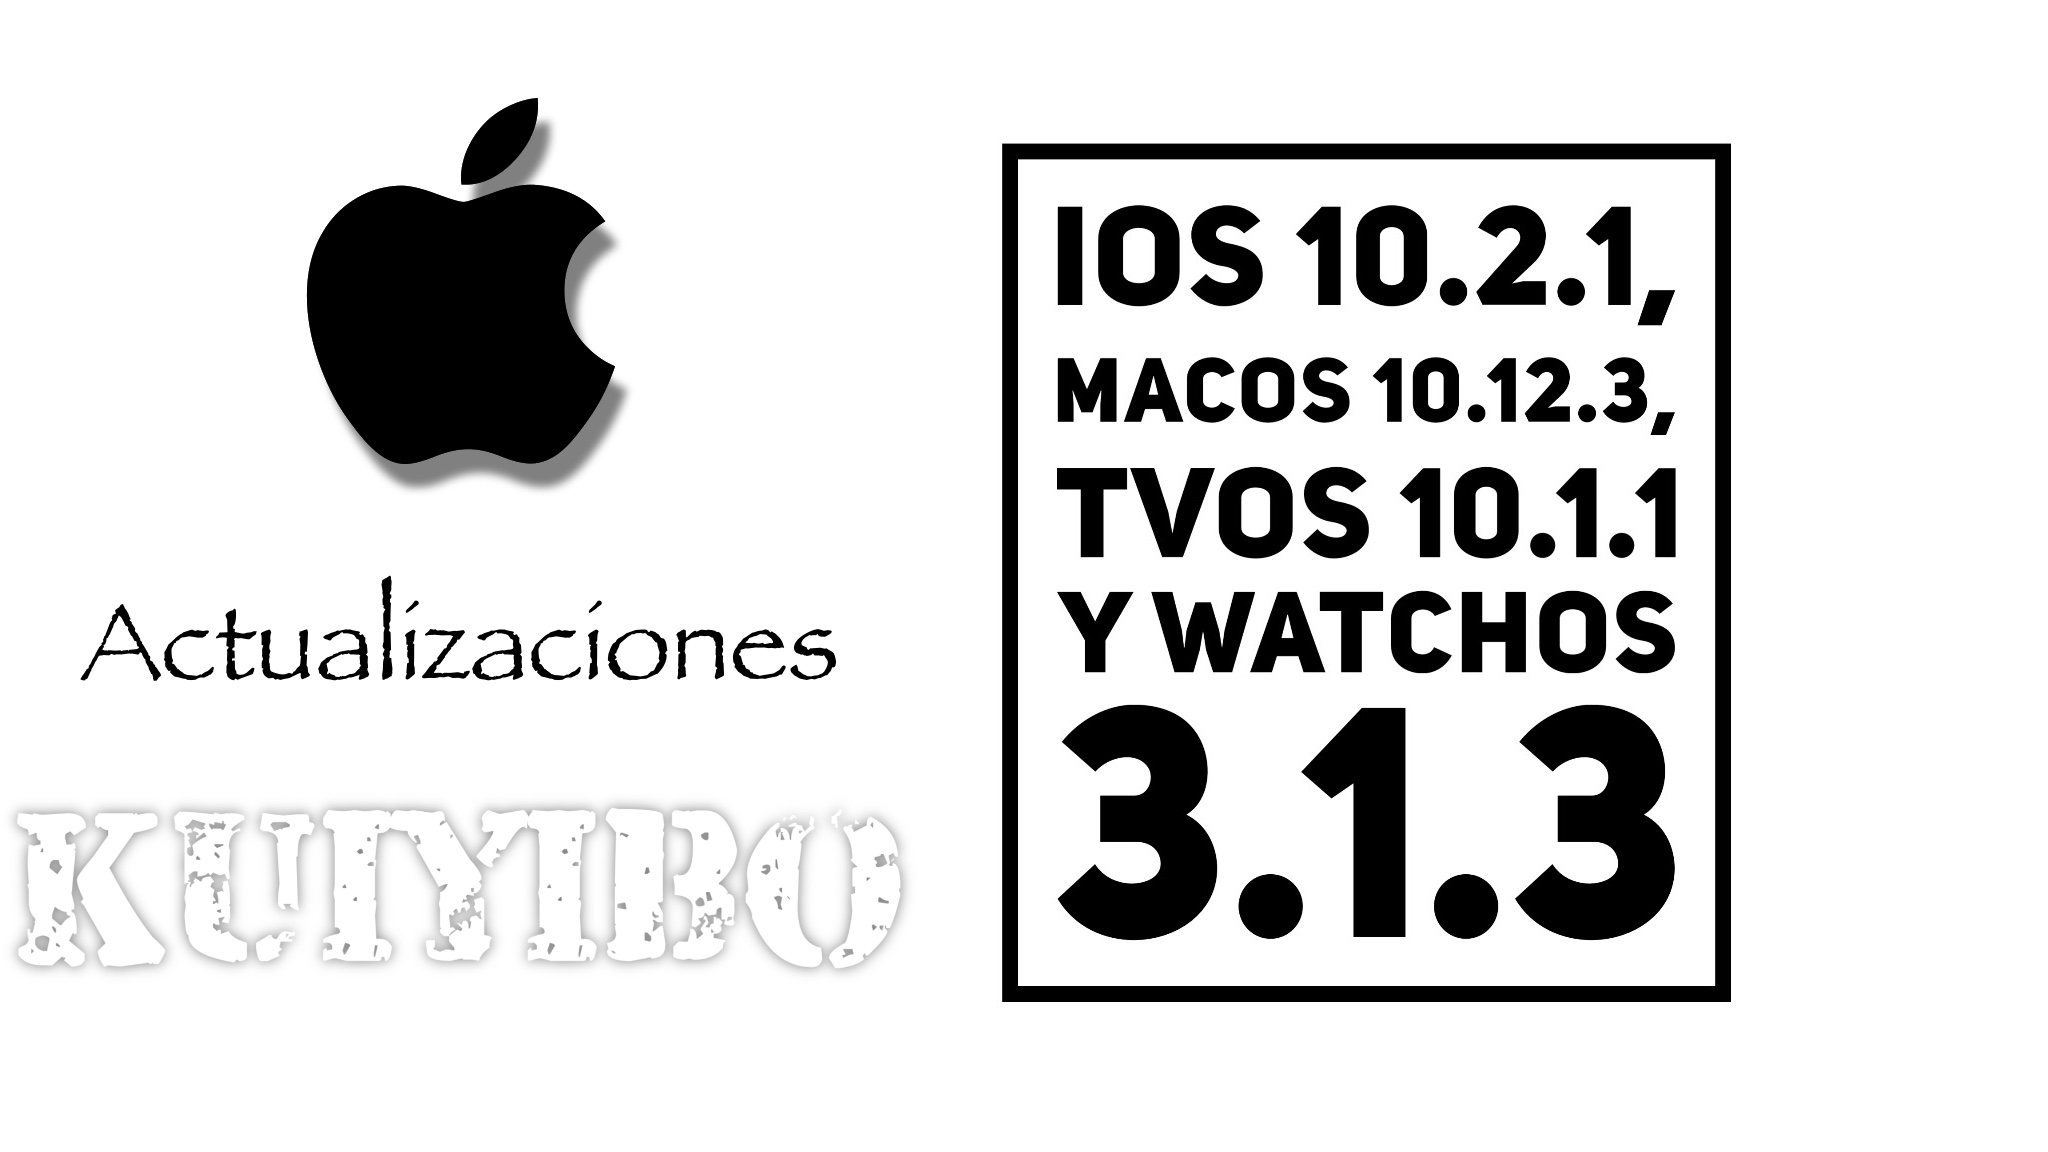 Actualizaciones para todos los dispositivos iOS 10.2.1, macOS Sierra 10.12.3, tvOS 10.1.1 y watchOS 3.1.3